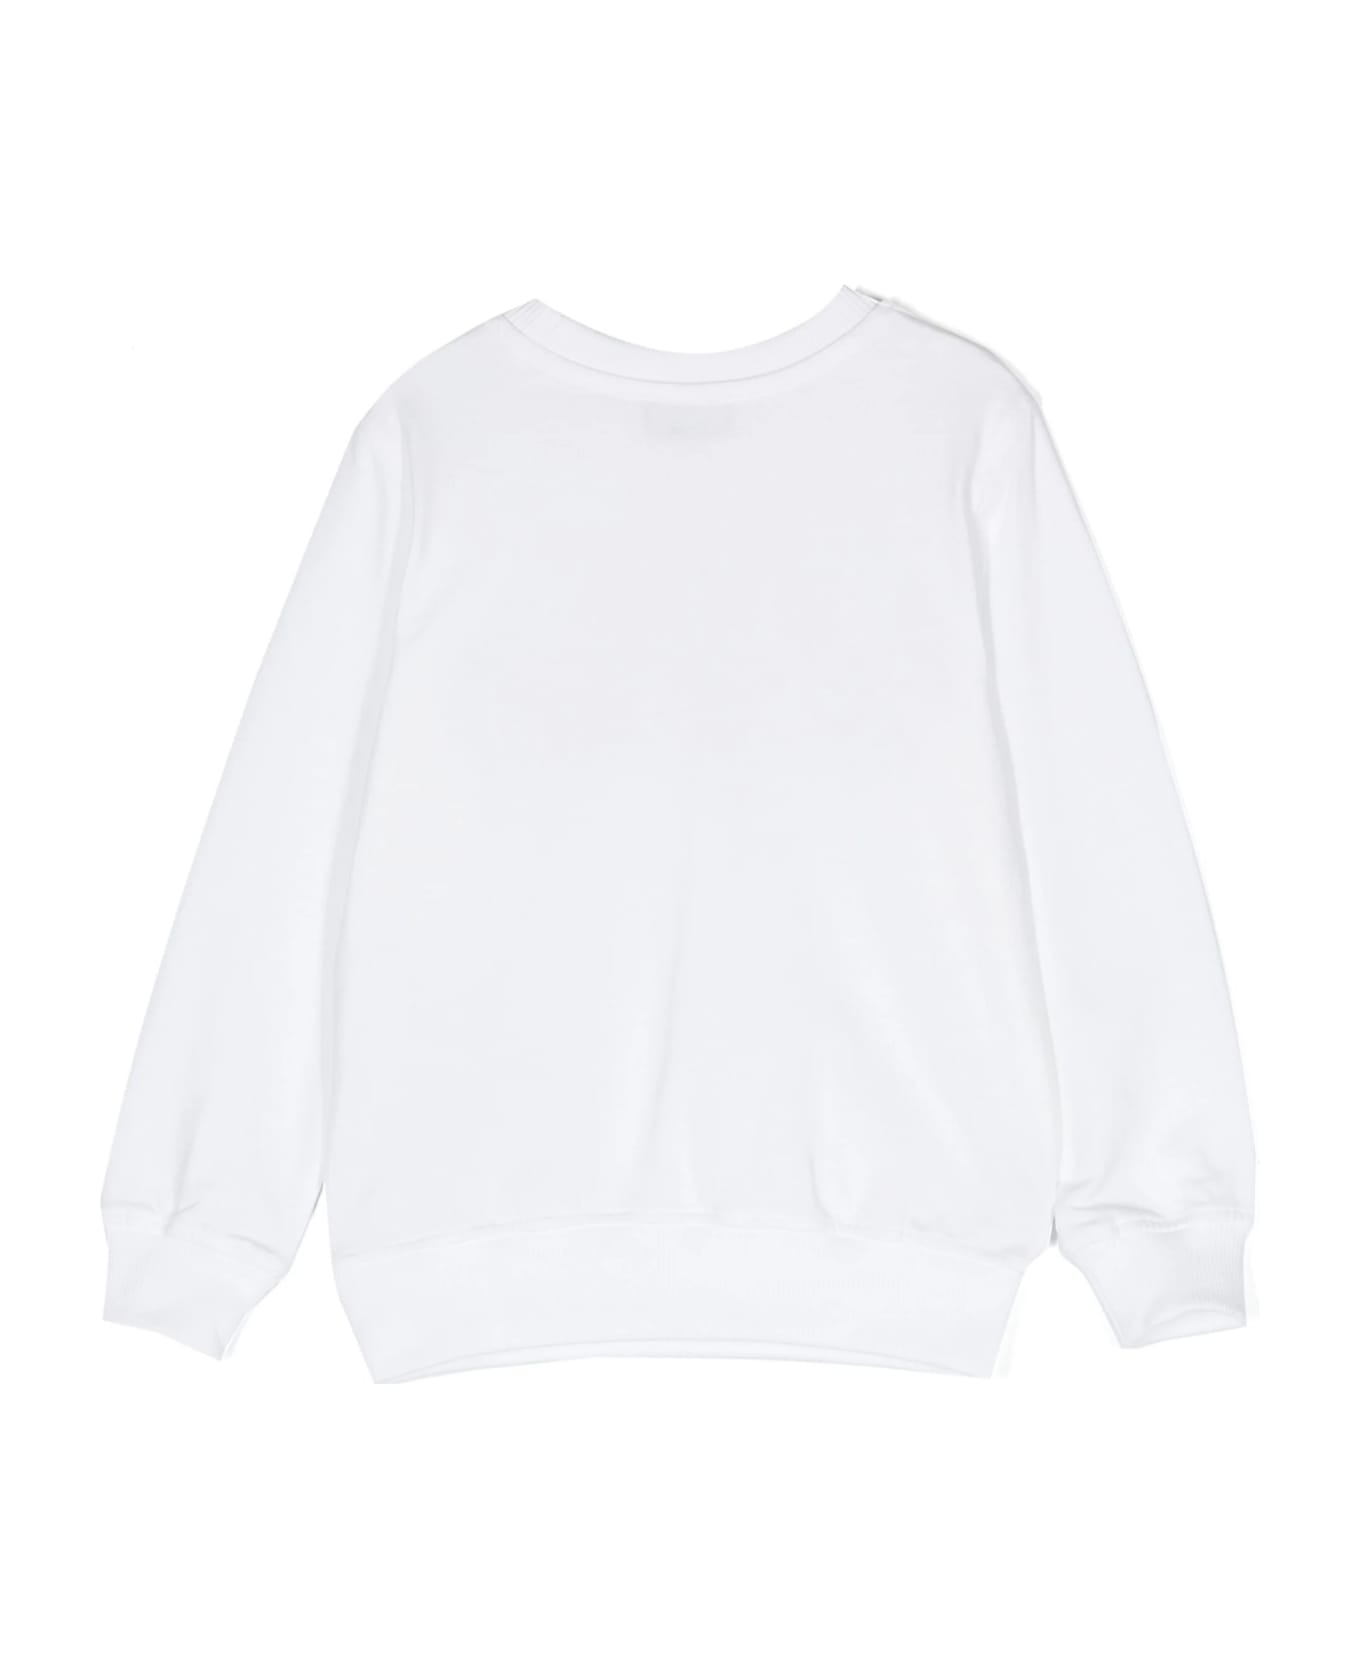 Moschino White Sweatshirt With Moschino Teddy Friends Print - White